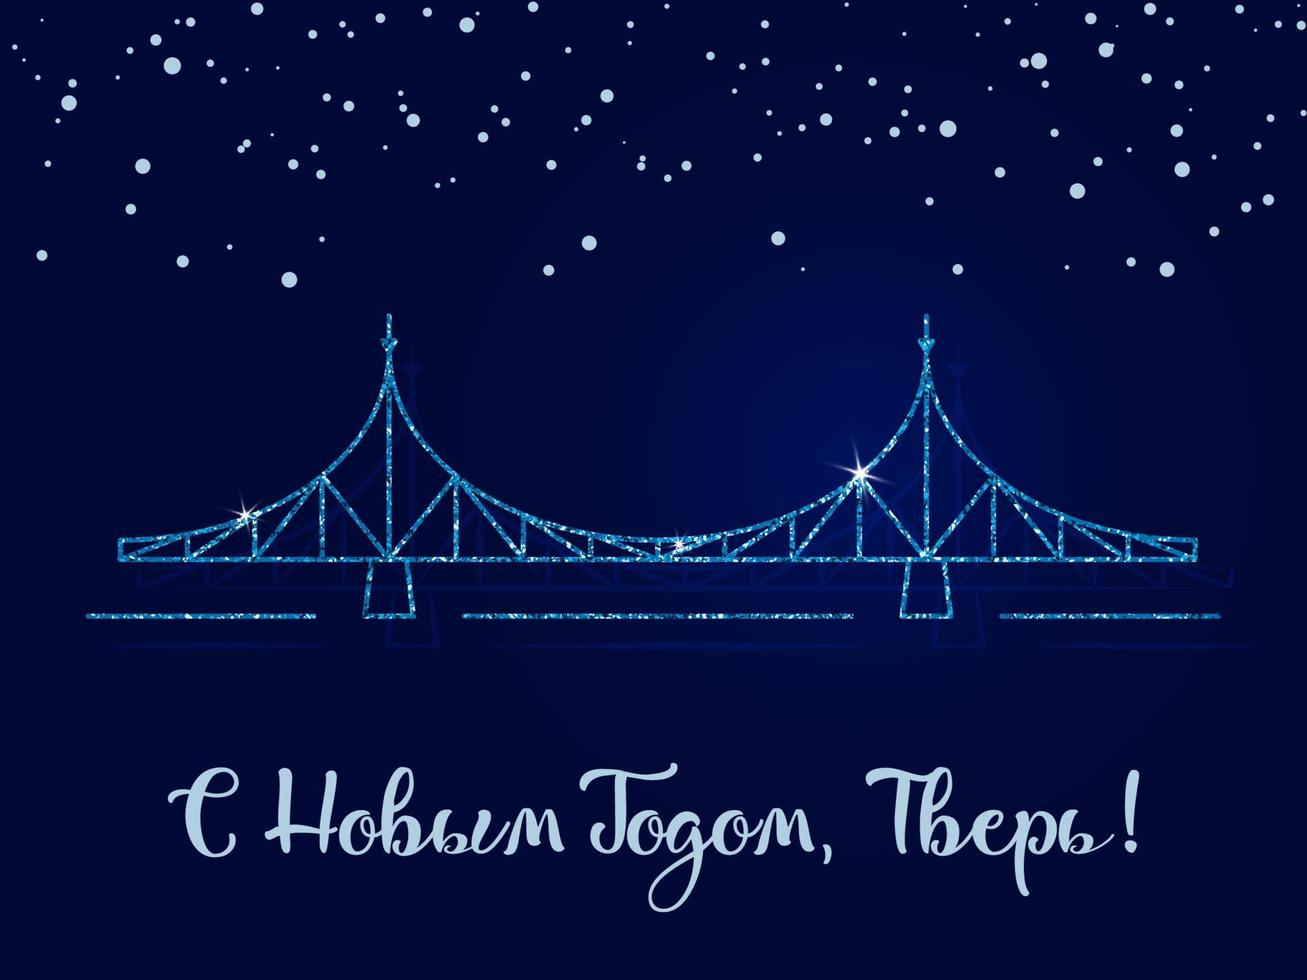 feliz año nuevo, tver - la inscripción en ruso. el puente viejo es el principal símbolo de la ciudad. ilustración vectorial. fondo azul oscuro con copos de nieve. vector